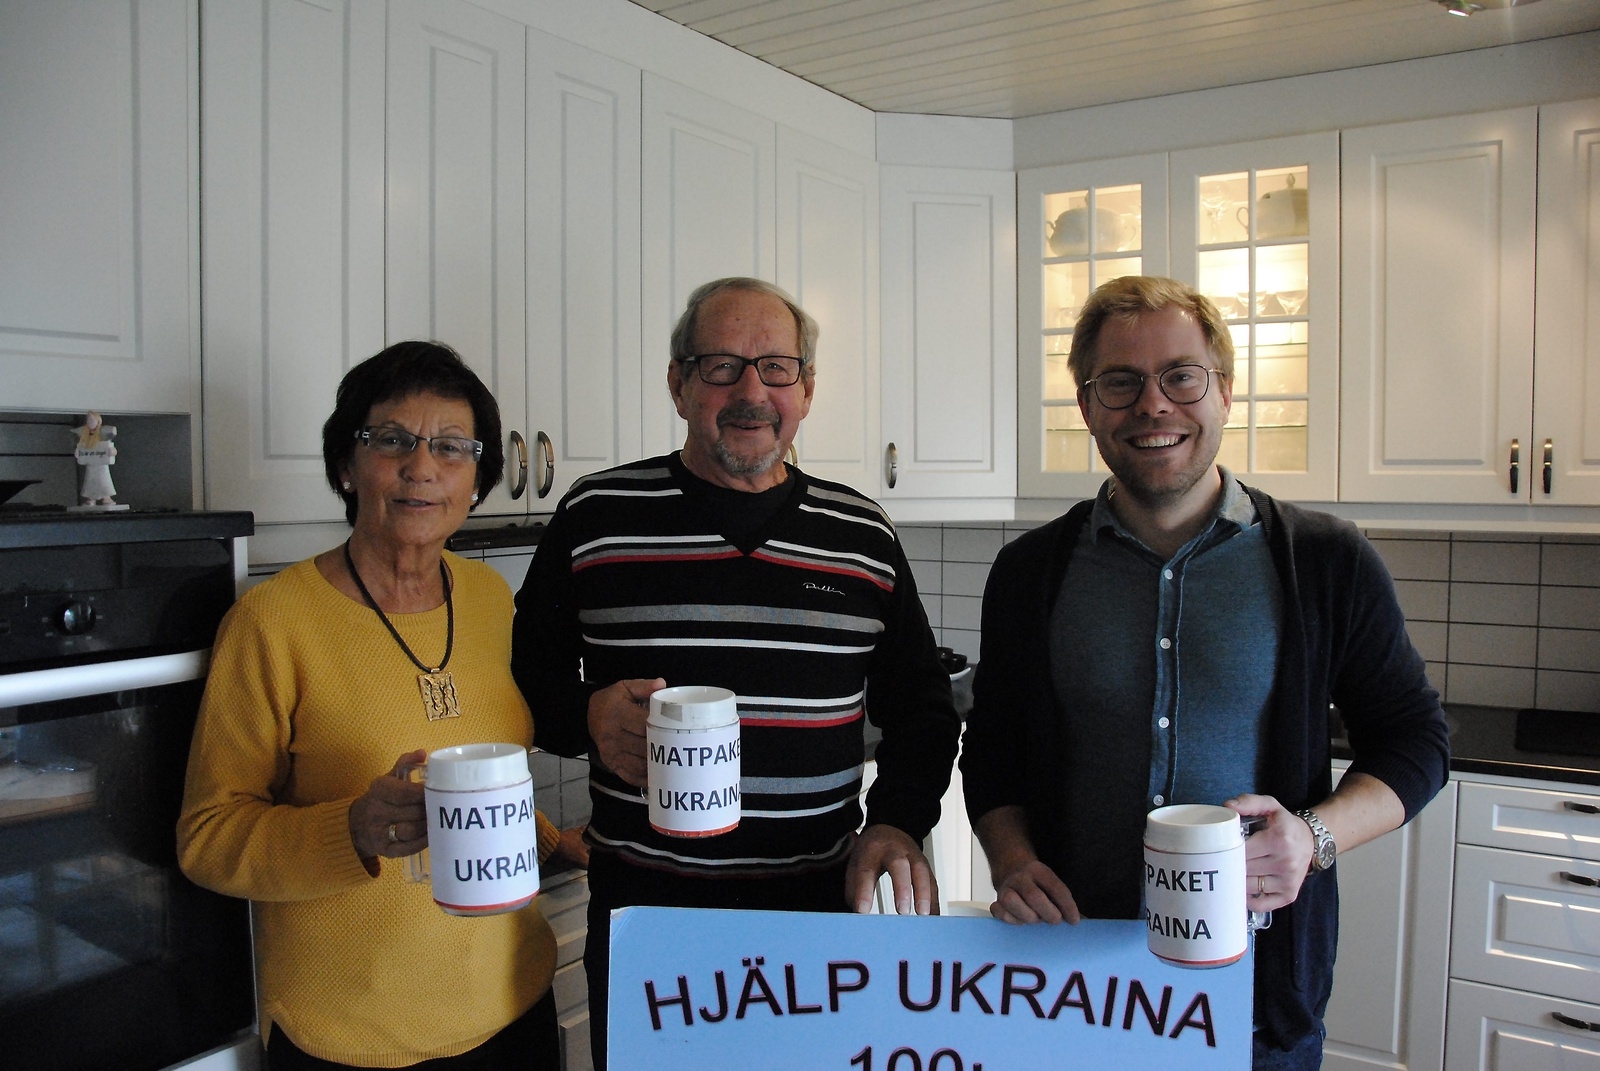 Med bössor och plakat kommer frivilliga representanter från de organisationer som samarbetar med insamlingen till matpaketen Ukraina att stå utanför matbutiker i Osby och Lönsboda för att samla in pengar. 		Foto: Eva Solér